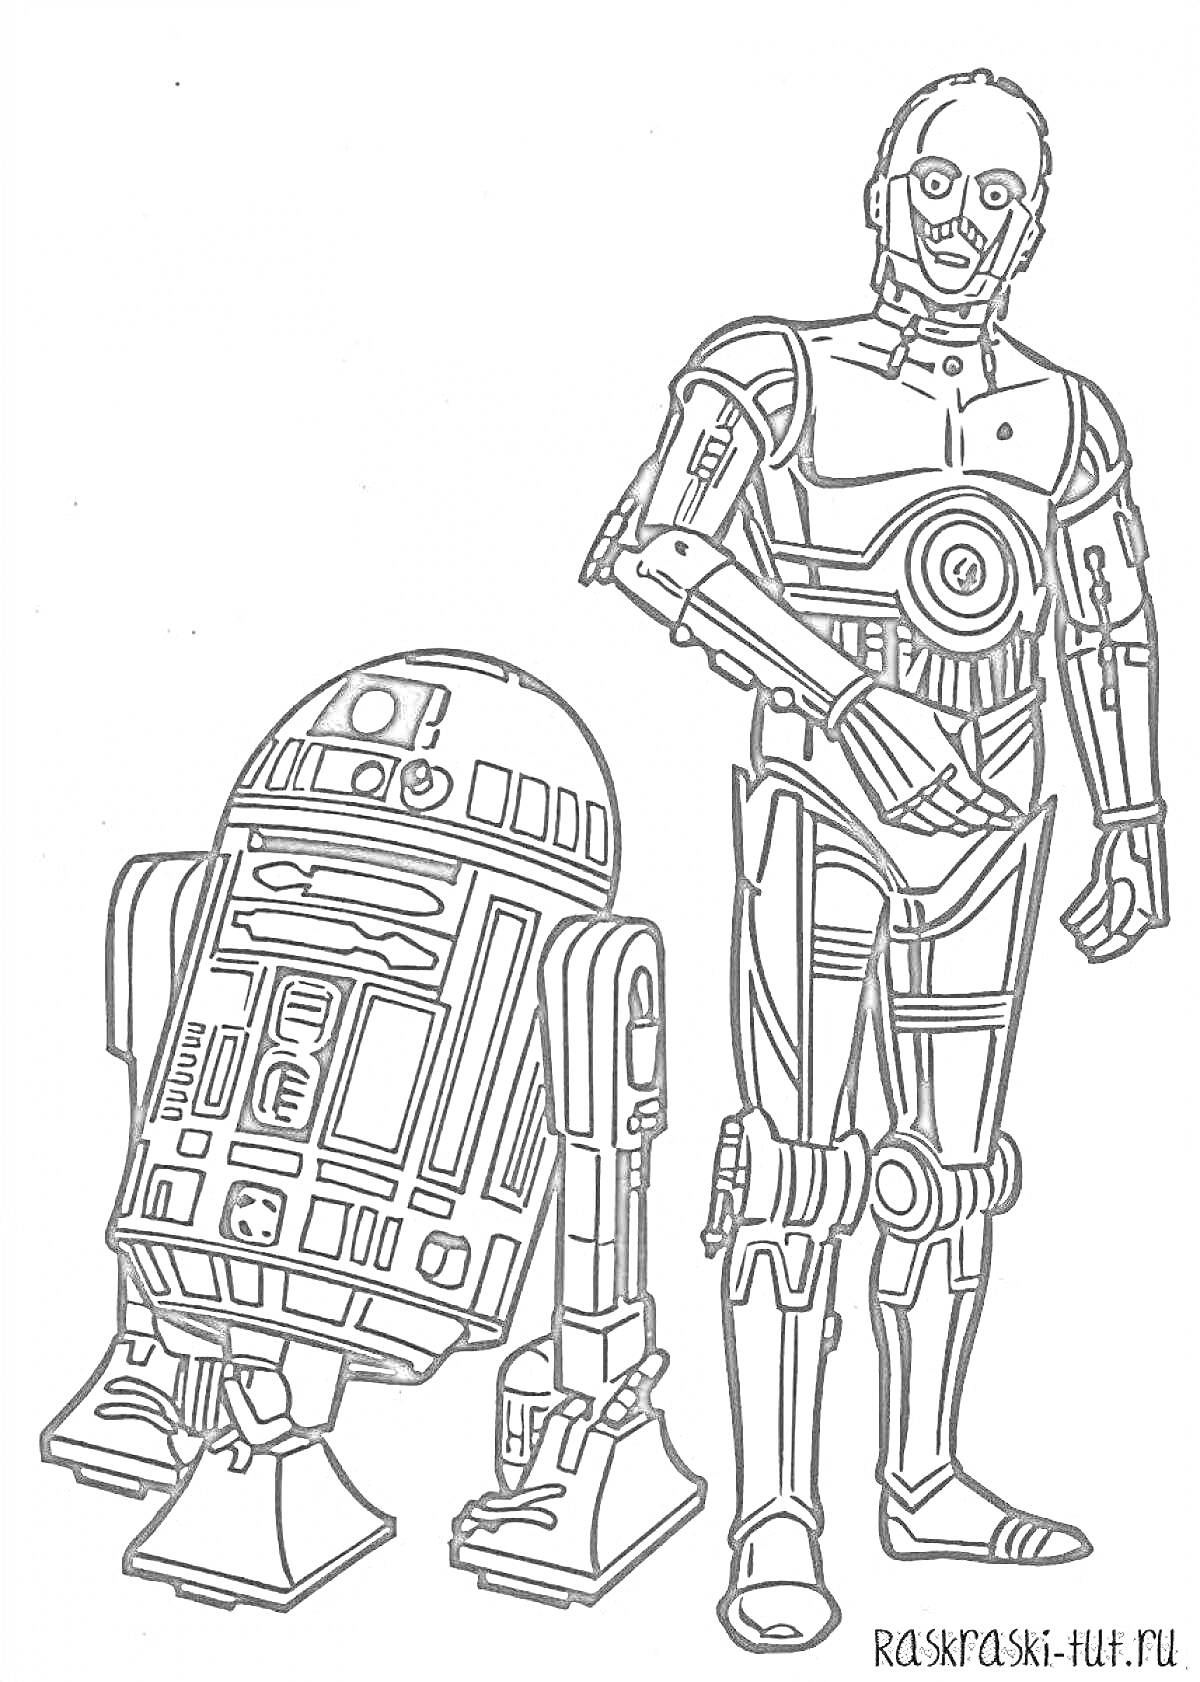 Раскраска Два робота из Звездных Войн - R2-D2 и C-3PO